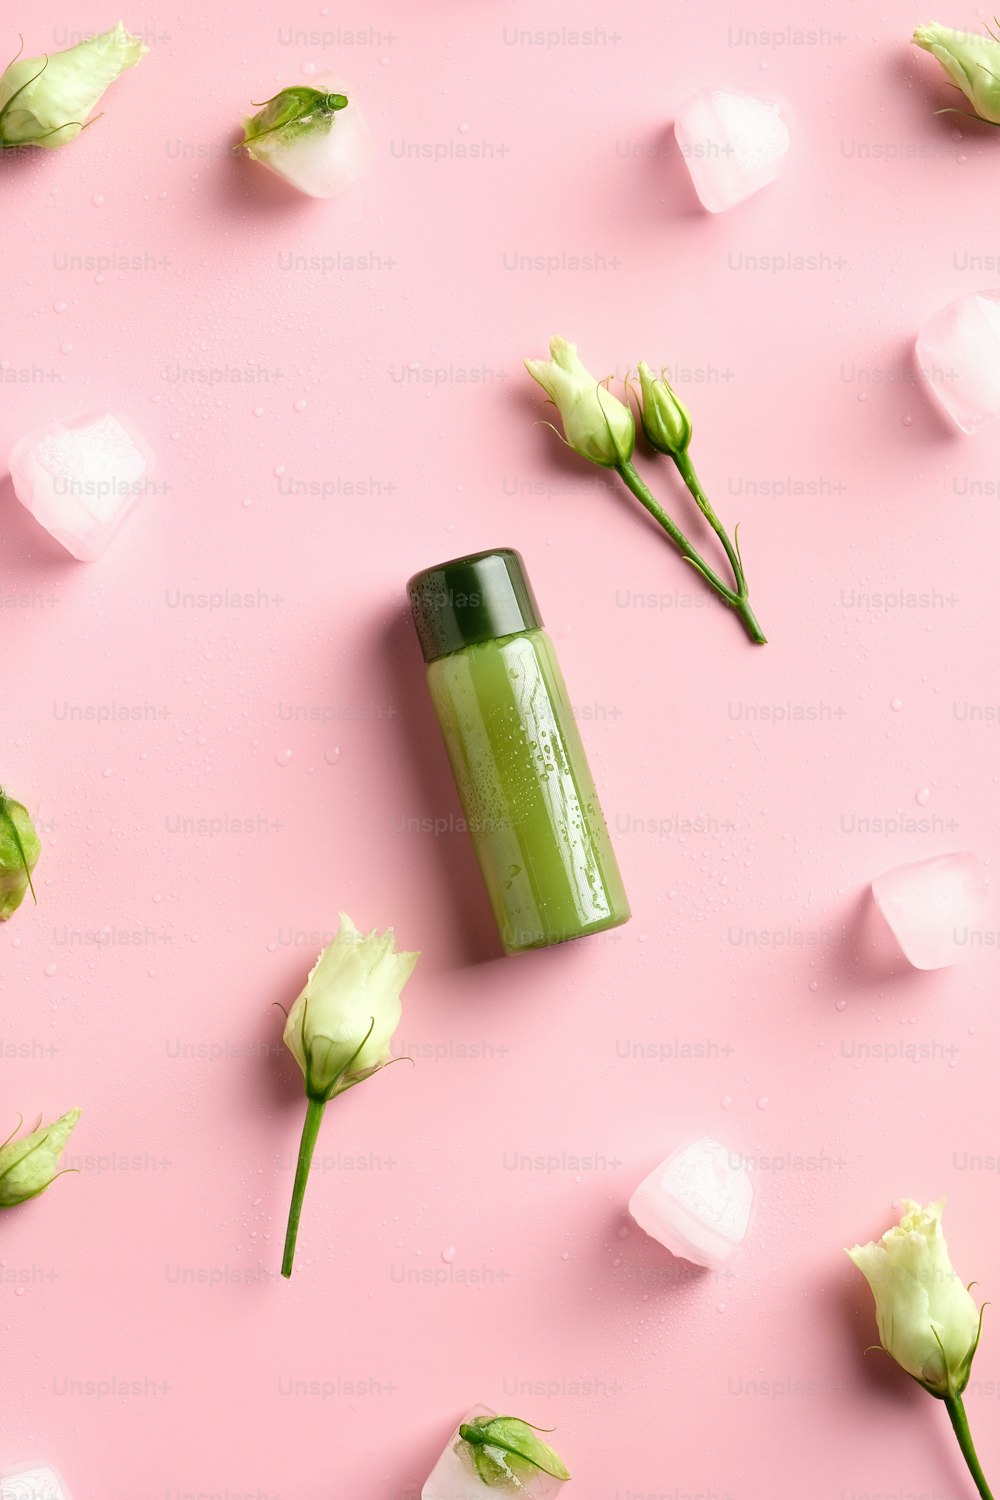 Duschgel grün klare Kosmetikflasche, Eiswürfel, Frühlingsblumen auf rosa Hintergrund. Natürliches Schönheitsprodukt. Flache Lage, Draufsicht.